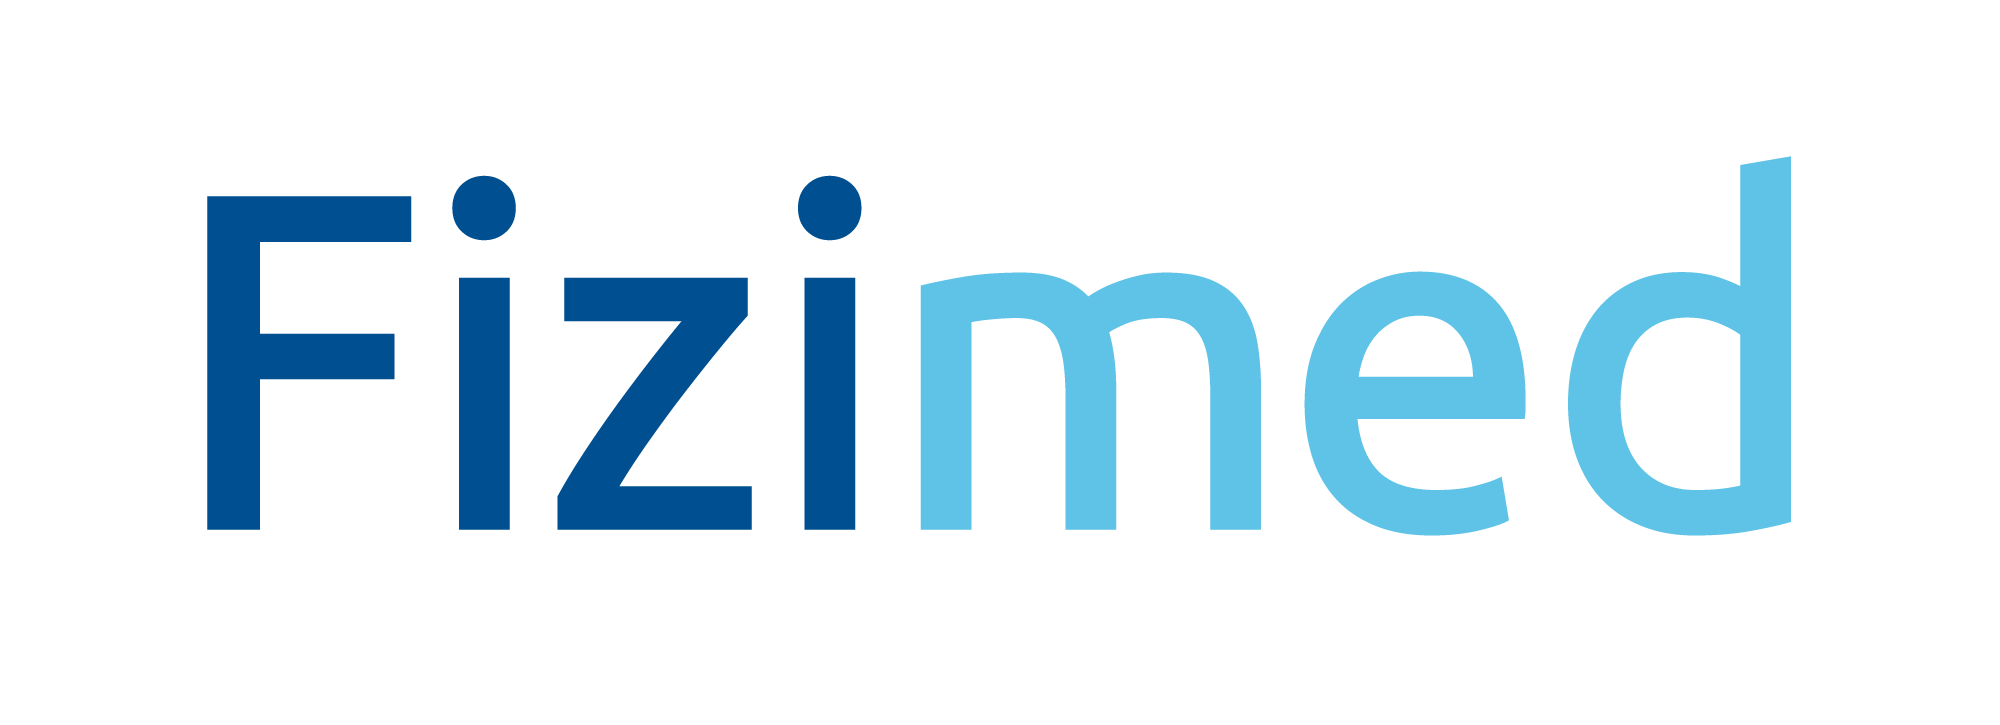 Logo Fizimed